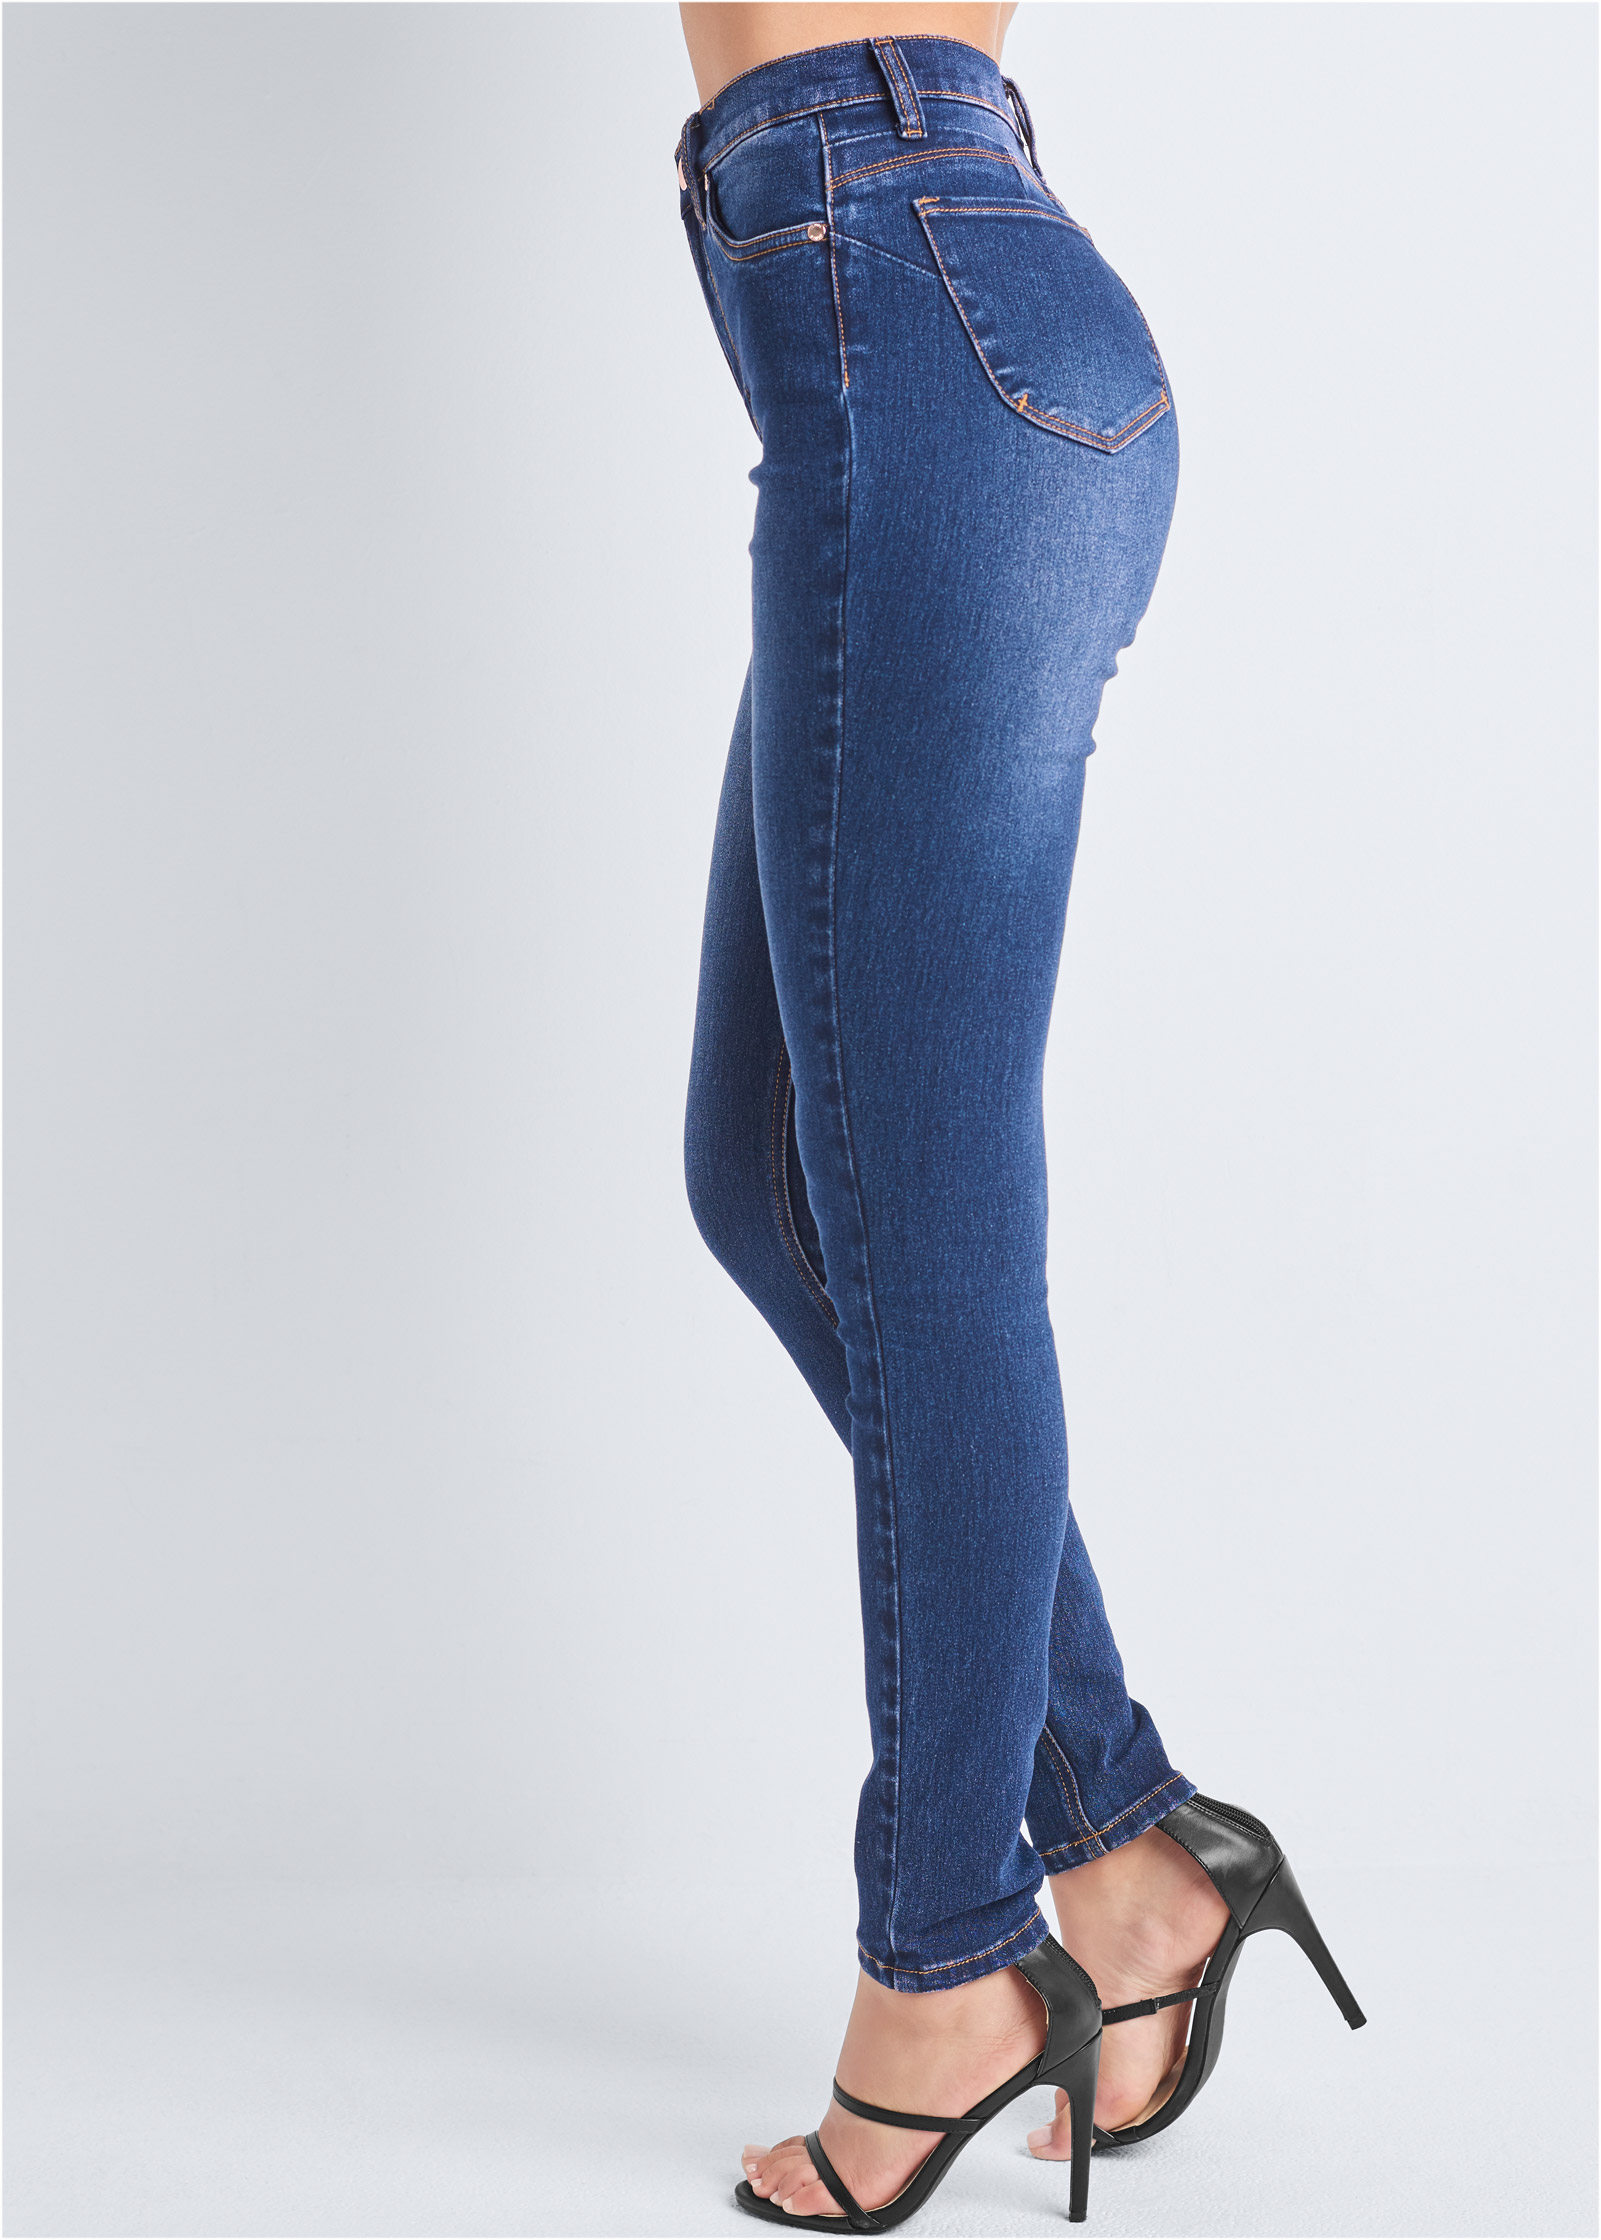 Bum Lifter Jeans in Dark Wash | VENUS